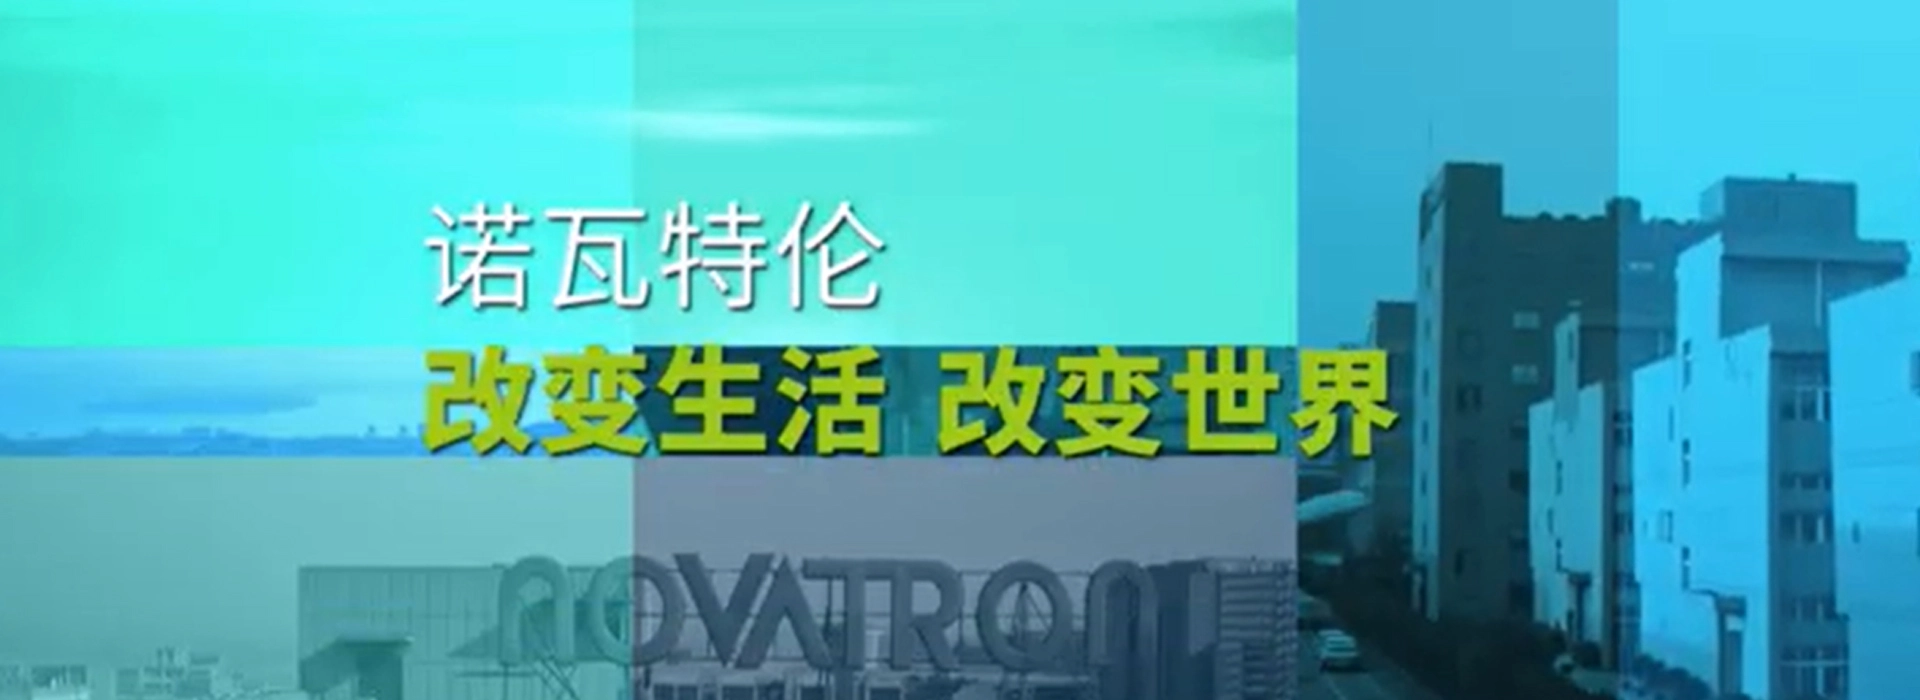 Novatron Company Profile Video-Chinese